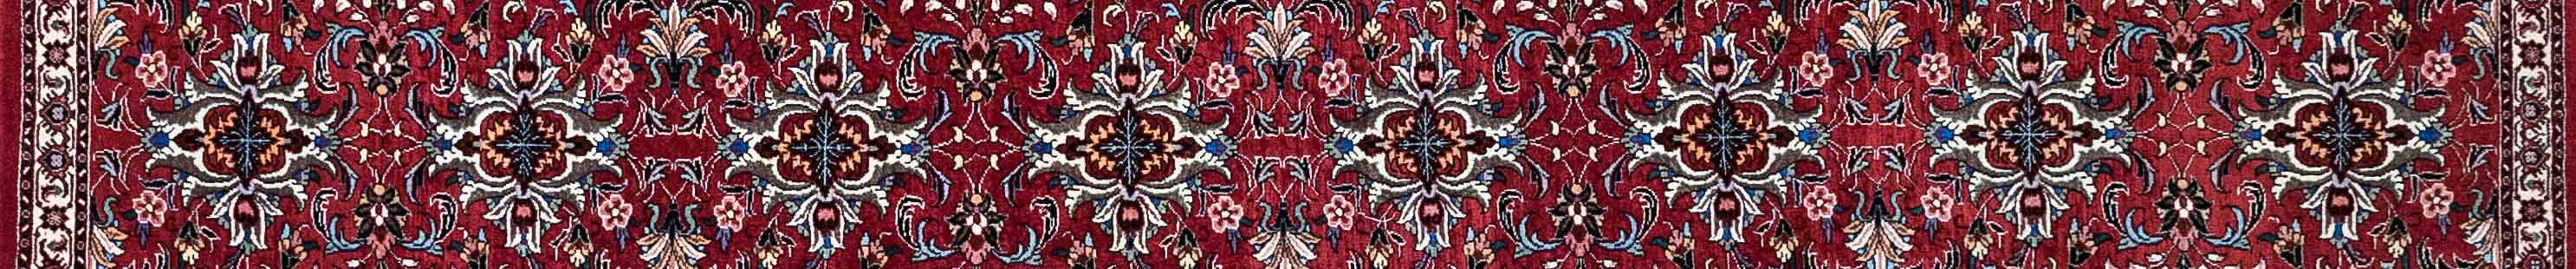 Bidjar Persian Carpet Rug N1Carpet Canada Montreal Tapis Persan 1350